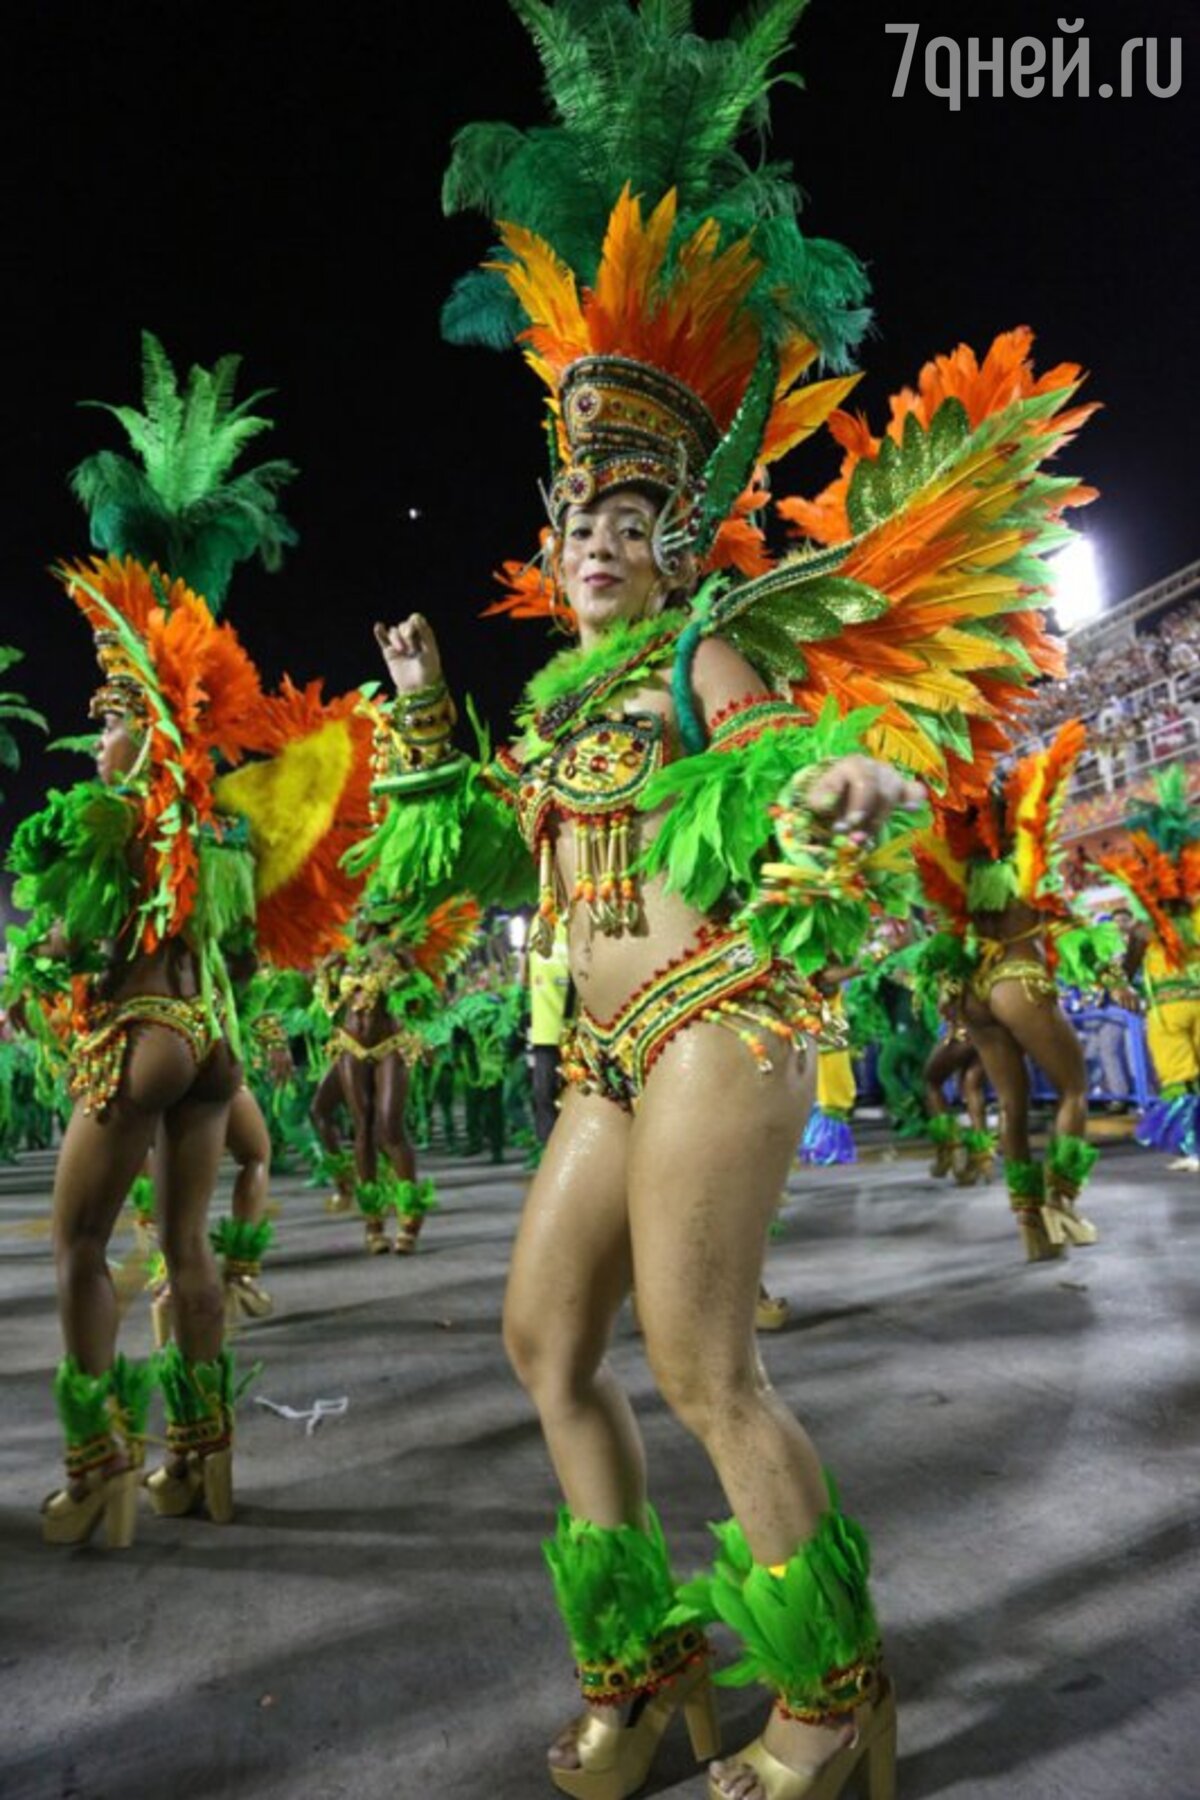 Бразильский карнавал / Carnaval Brasileirinhas смотреть онлайн Порно Фильмы 